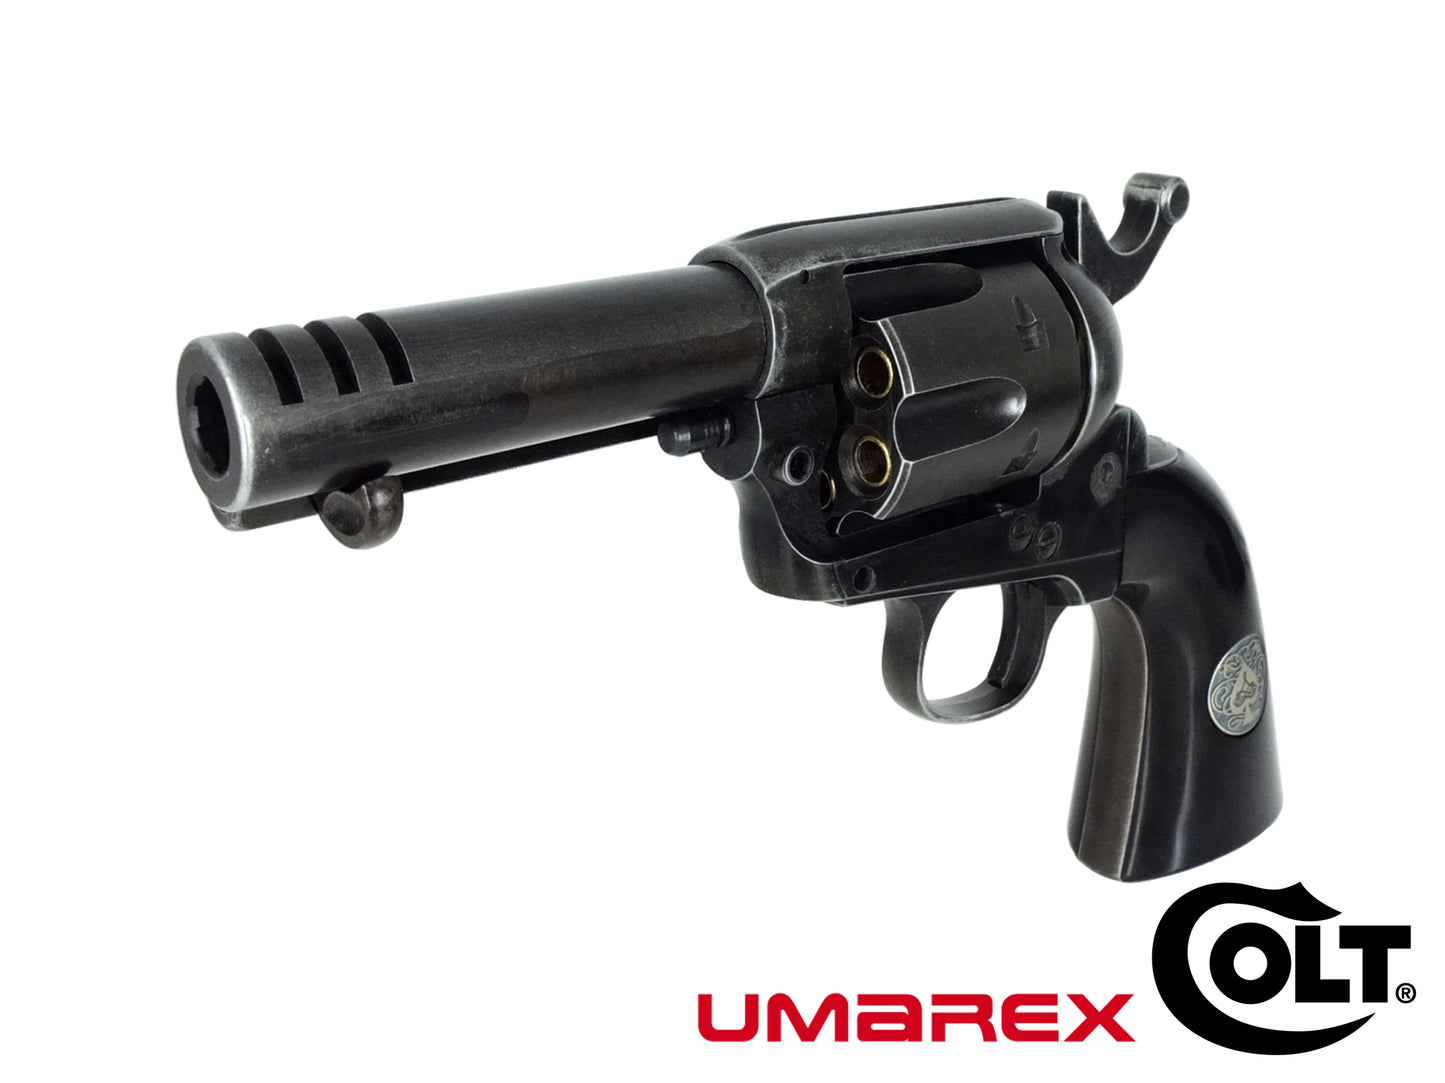 UMAREX COLT コルト SAA エース ウェザーバージョン 6mm CO2ガスリボルバー メタルパーツセット.